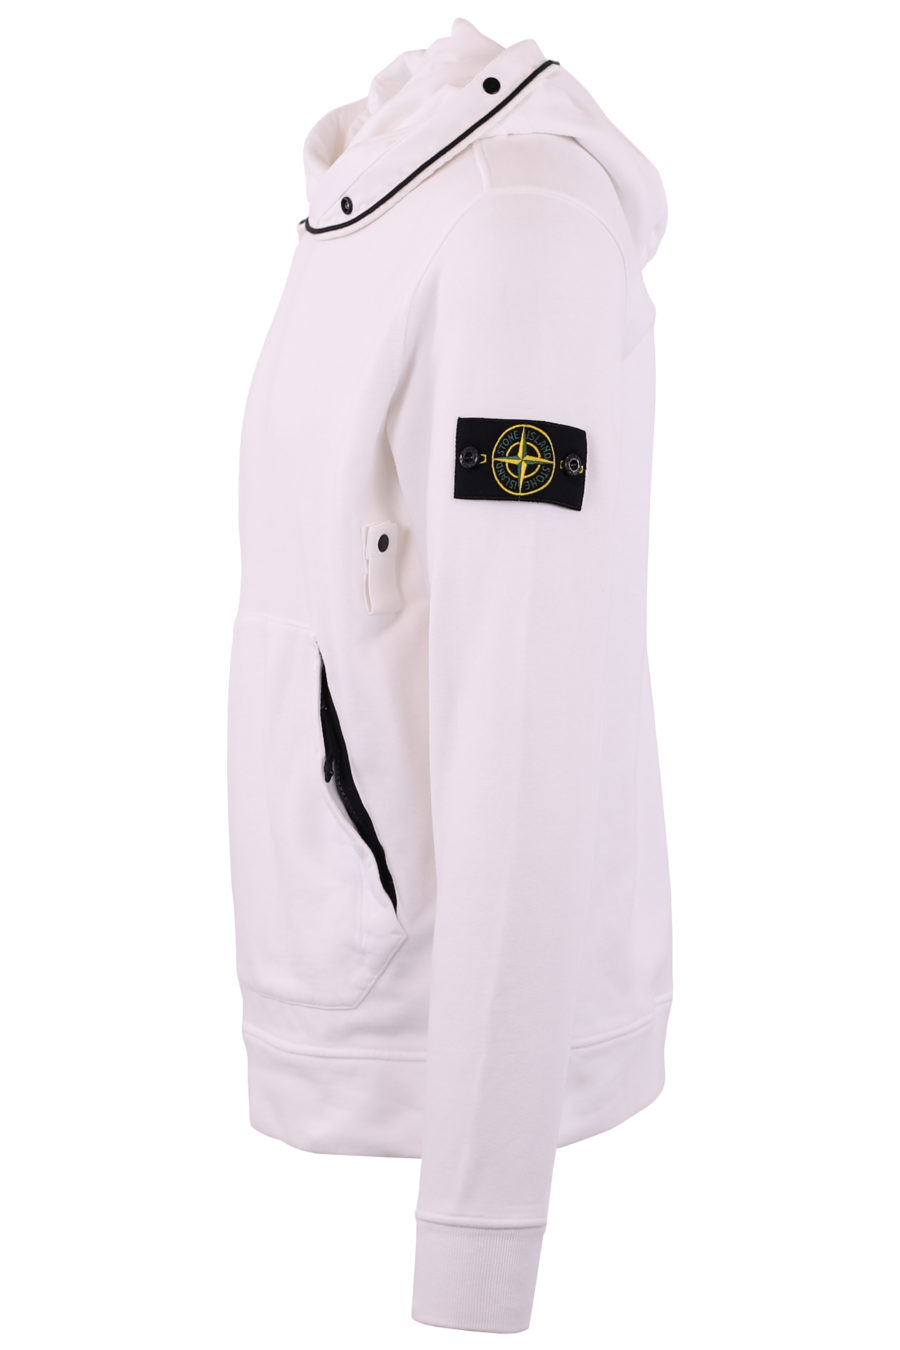 Sudadera blanca con capucha y botones - IMG 7205